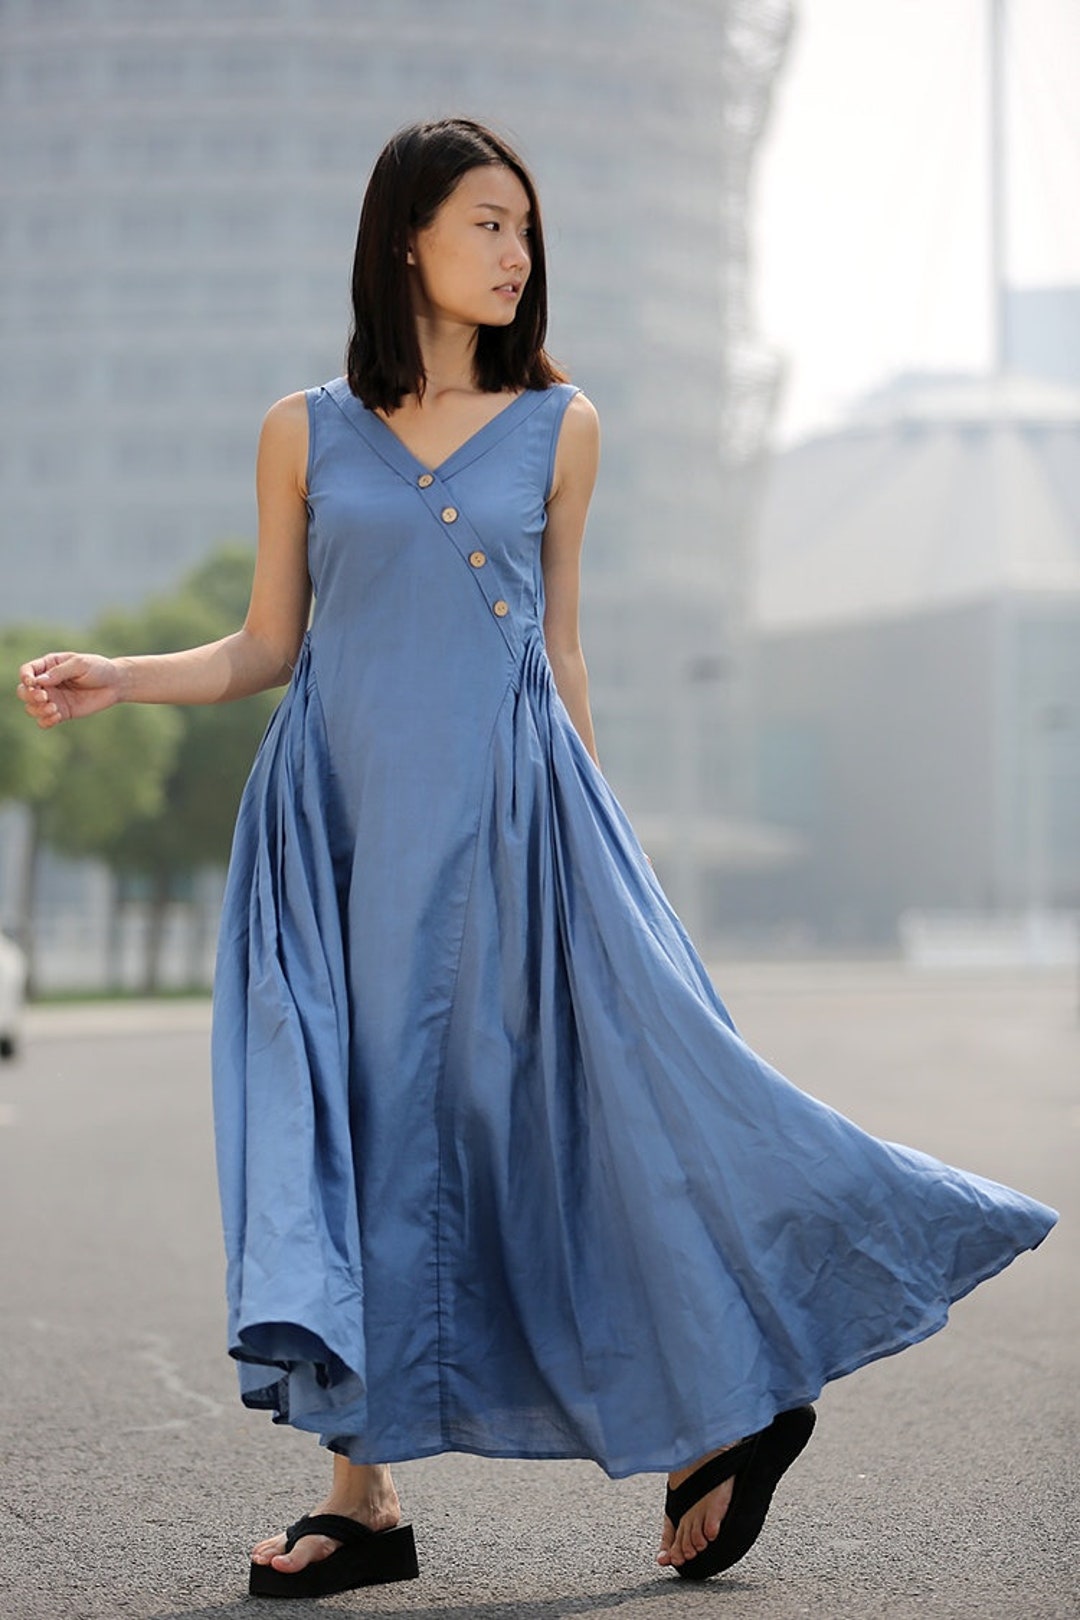 Blue Linen Dress Maxi Casual Summer Dress Long Length - Etsy